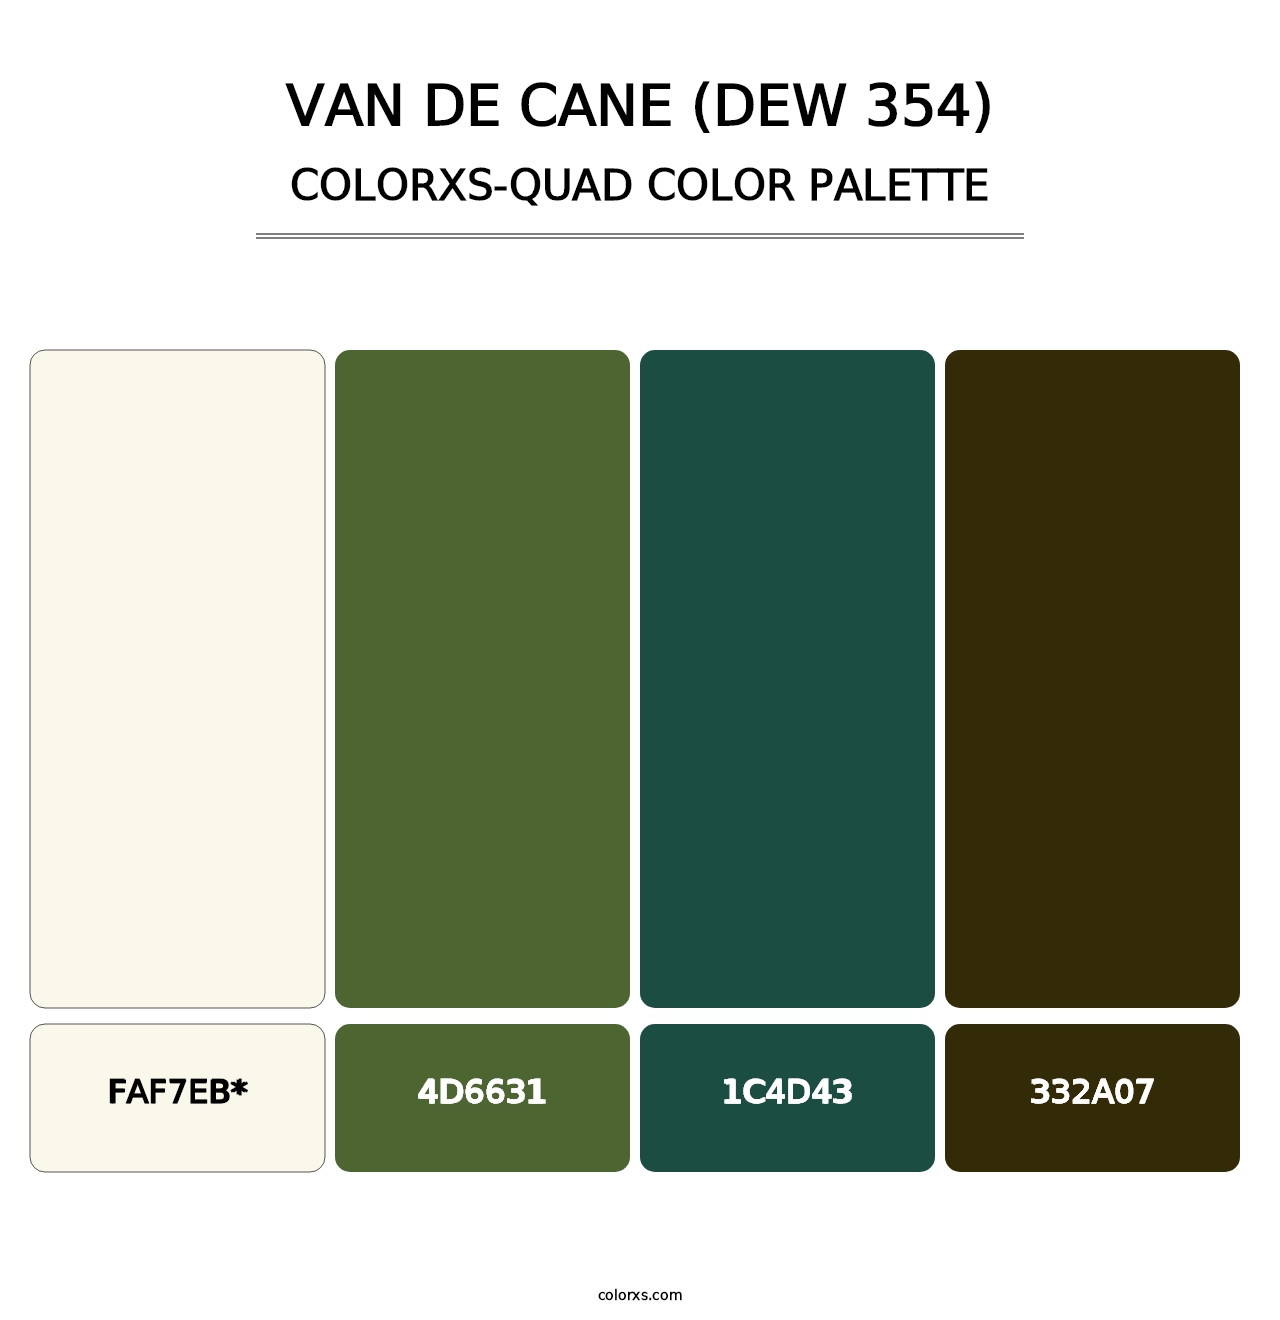 Van de Cane (DEW 354) - Colorxs Quad Palette